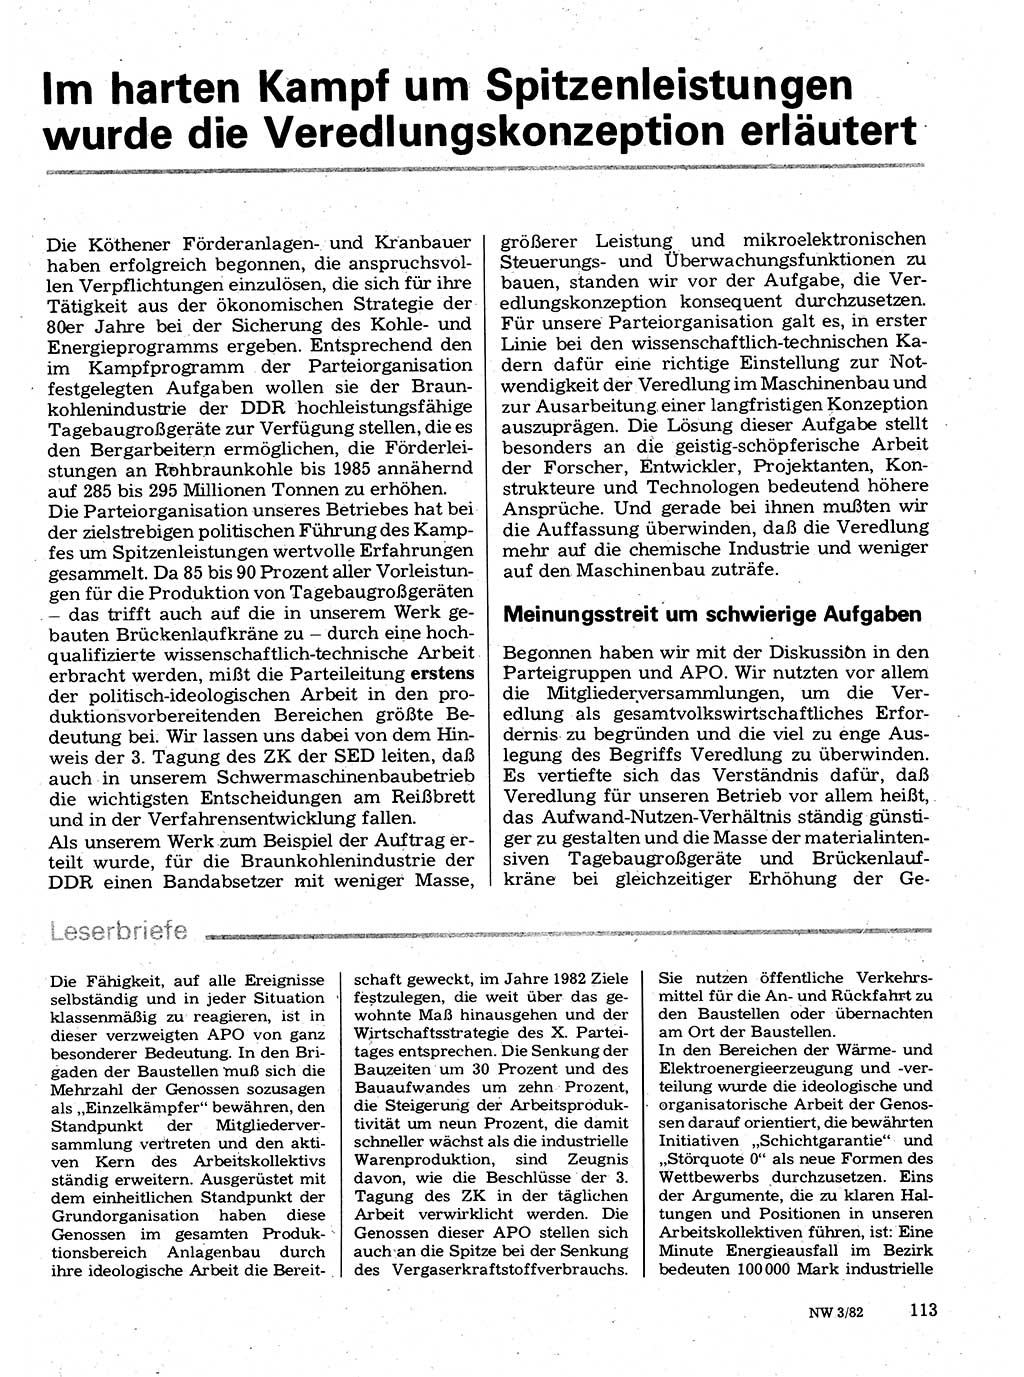 Neuer Weg (NW), Organ des Zentralkomitees (ZK) der SED (Sozialistische Einheitspartei Deutschlands) für Fragen des Parteilebens, 37. Jahrgang [Deutsche Demokratische Republik (DDR)] 1982, Seite 113 (NW ZK SED DDR 1982, S. 113)